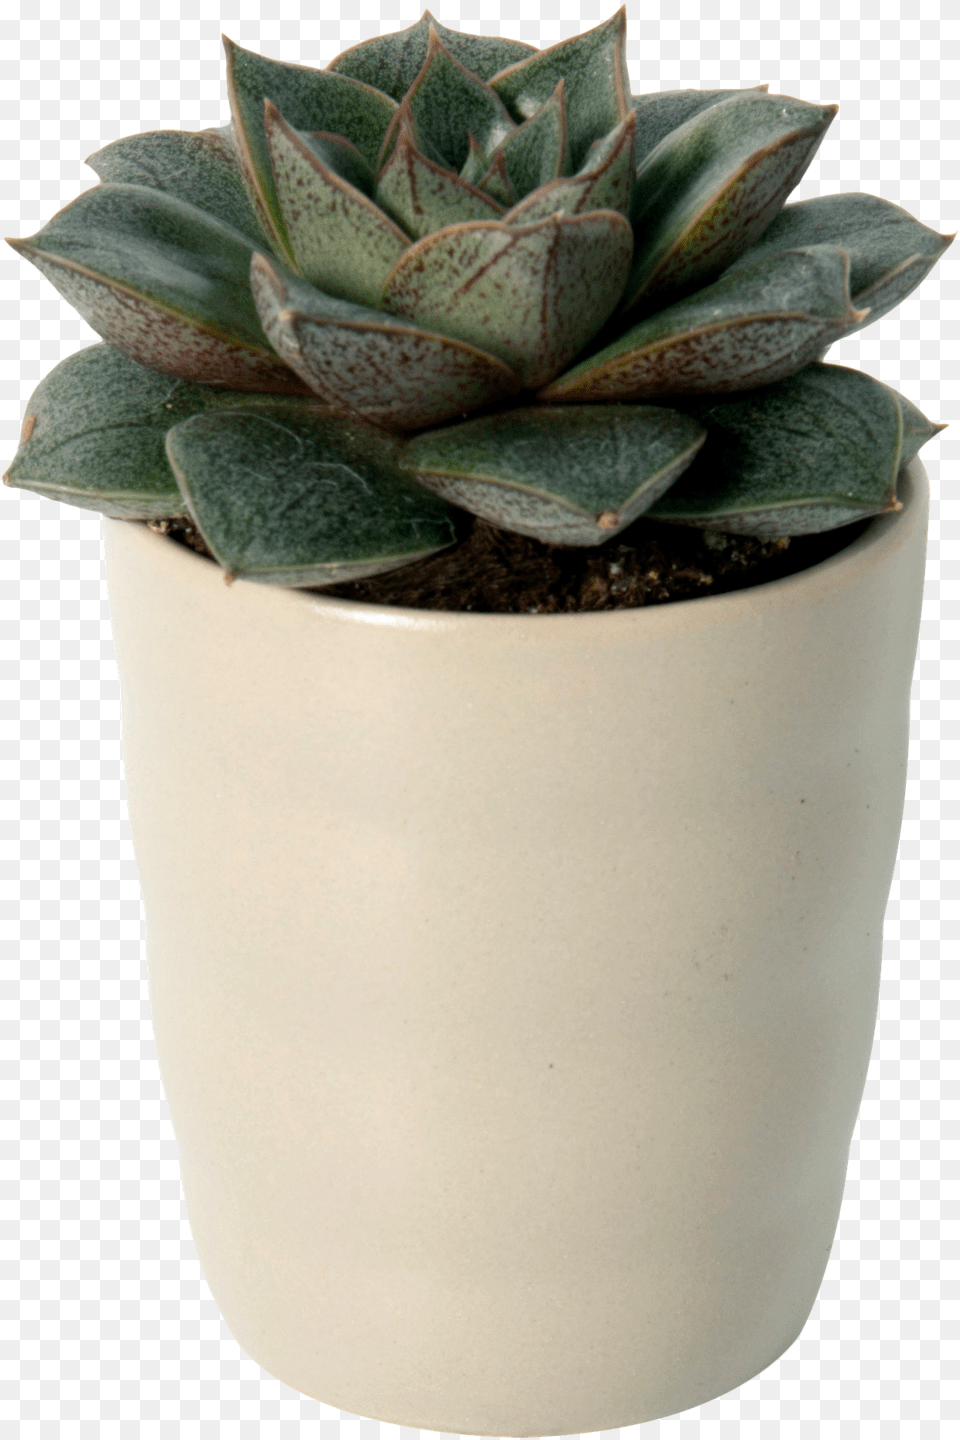 Flowerpot, Jar, Plant, Planter, Potted Plant Png Image